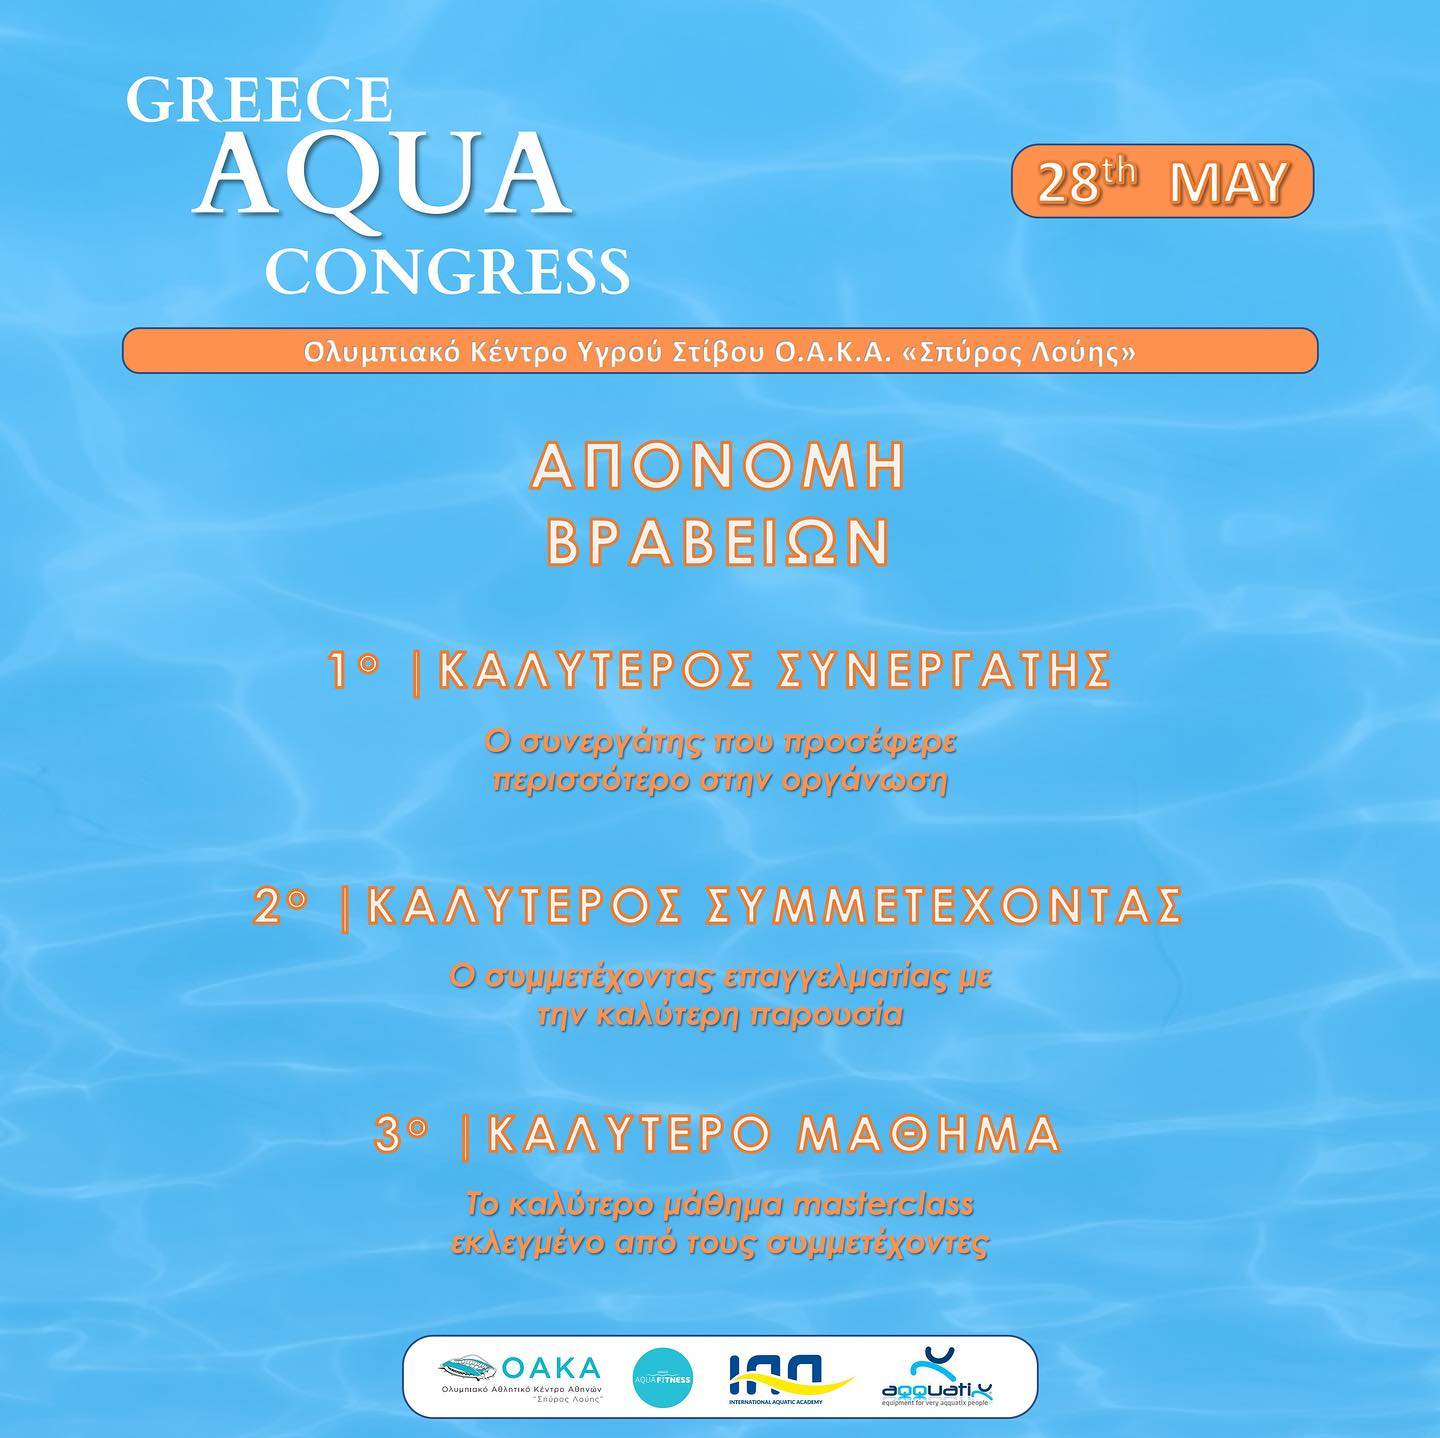 Οι καλύτεροι του Greece Aqua Congress